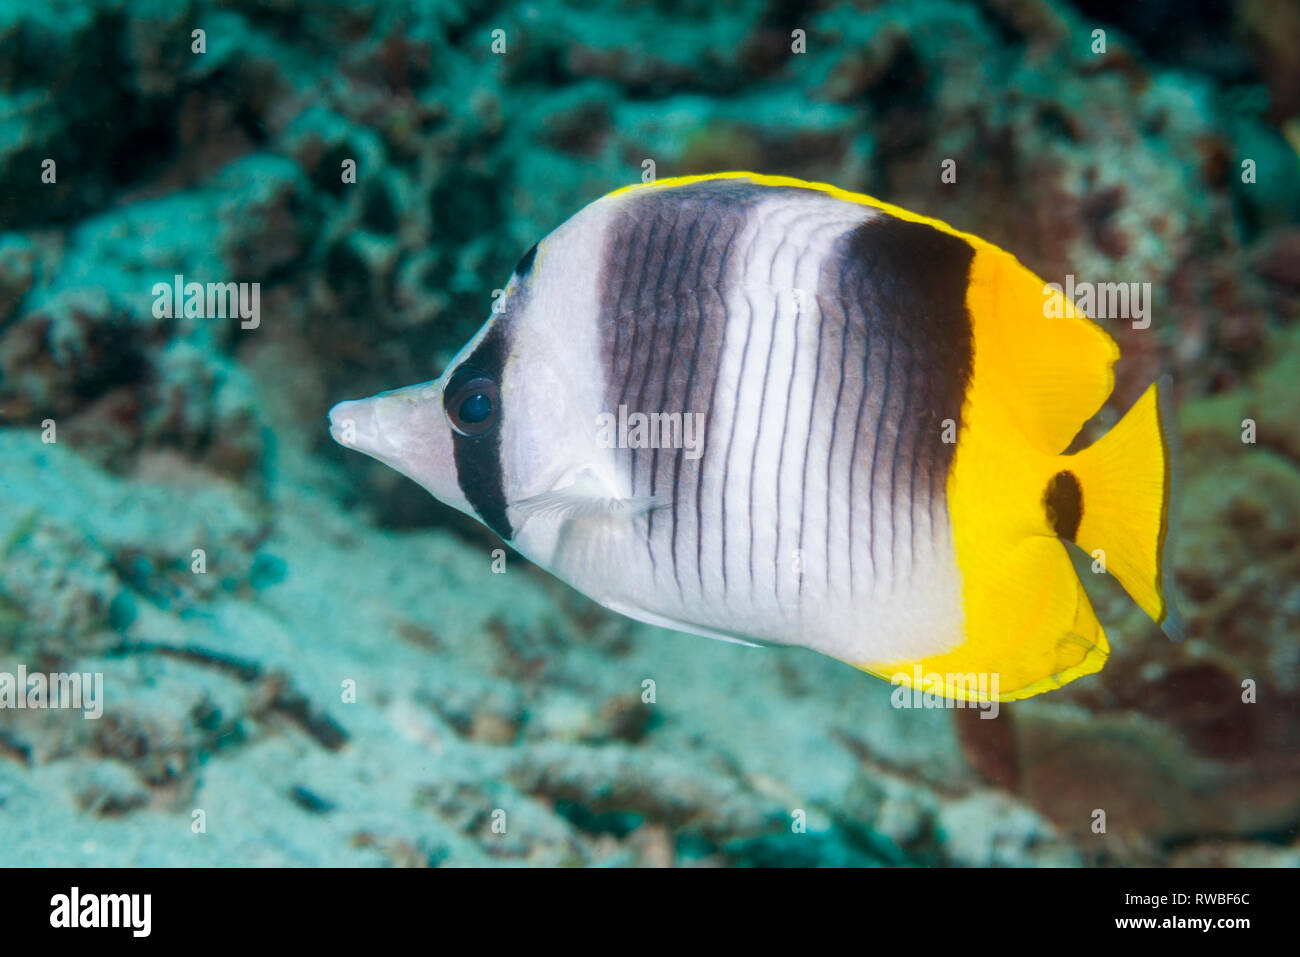 Pacific doppelklicken Sattel falterfische oder Falsch [Furcula falterfische Chaetodon ulietensis]. Nord Sulawesi, Indonesien. Zentraler Indopazifik. Stockfoto